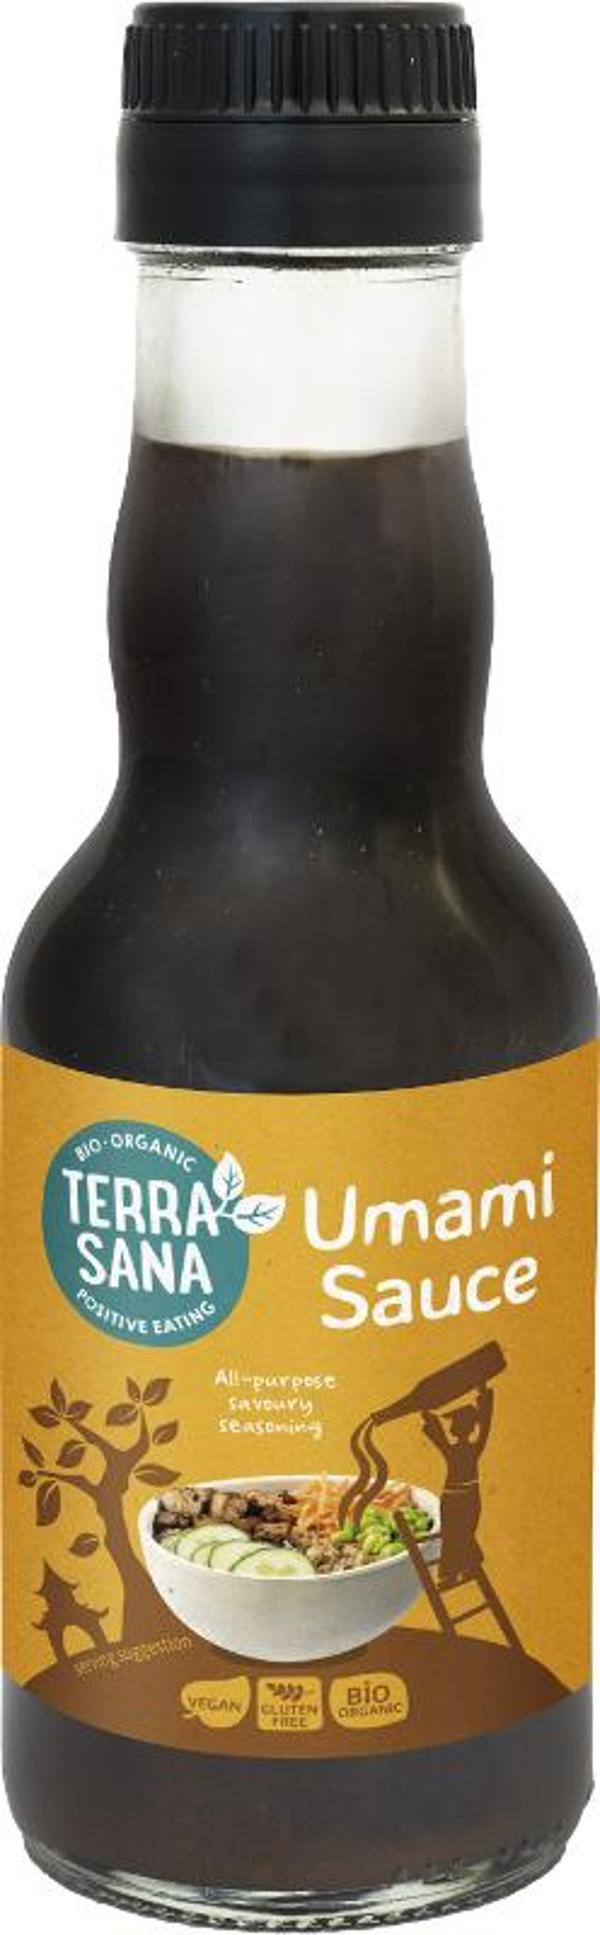 Produktfoto zu Umami Sauce